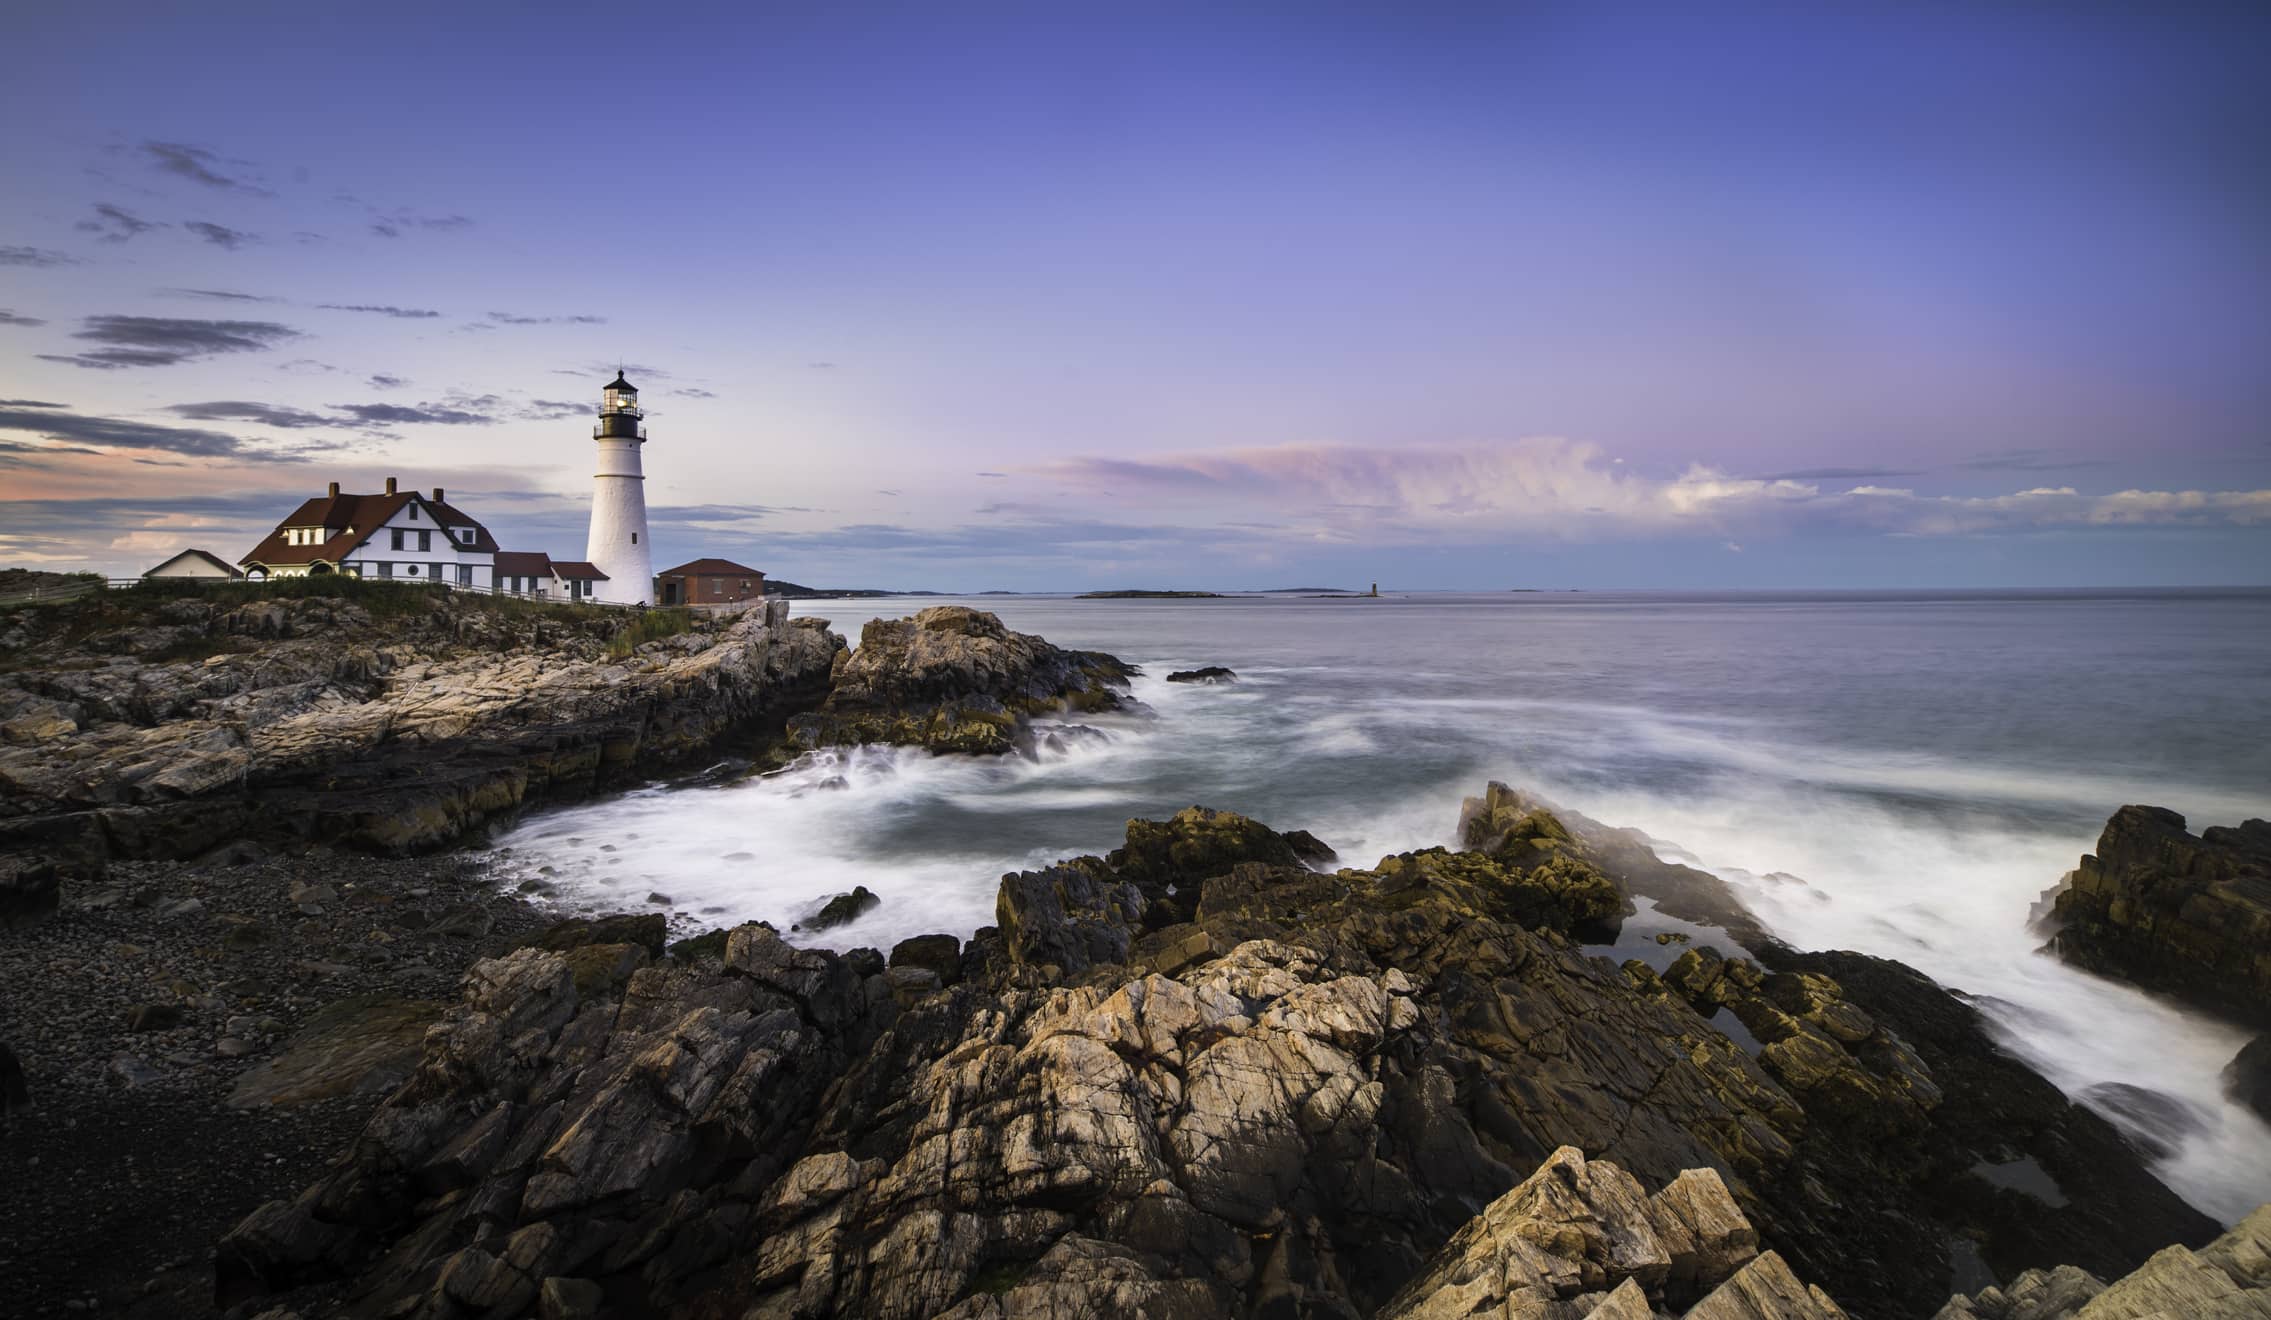 lighthouse on rocky coast